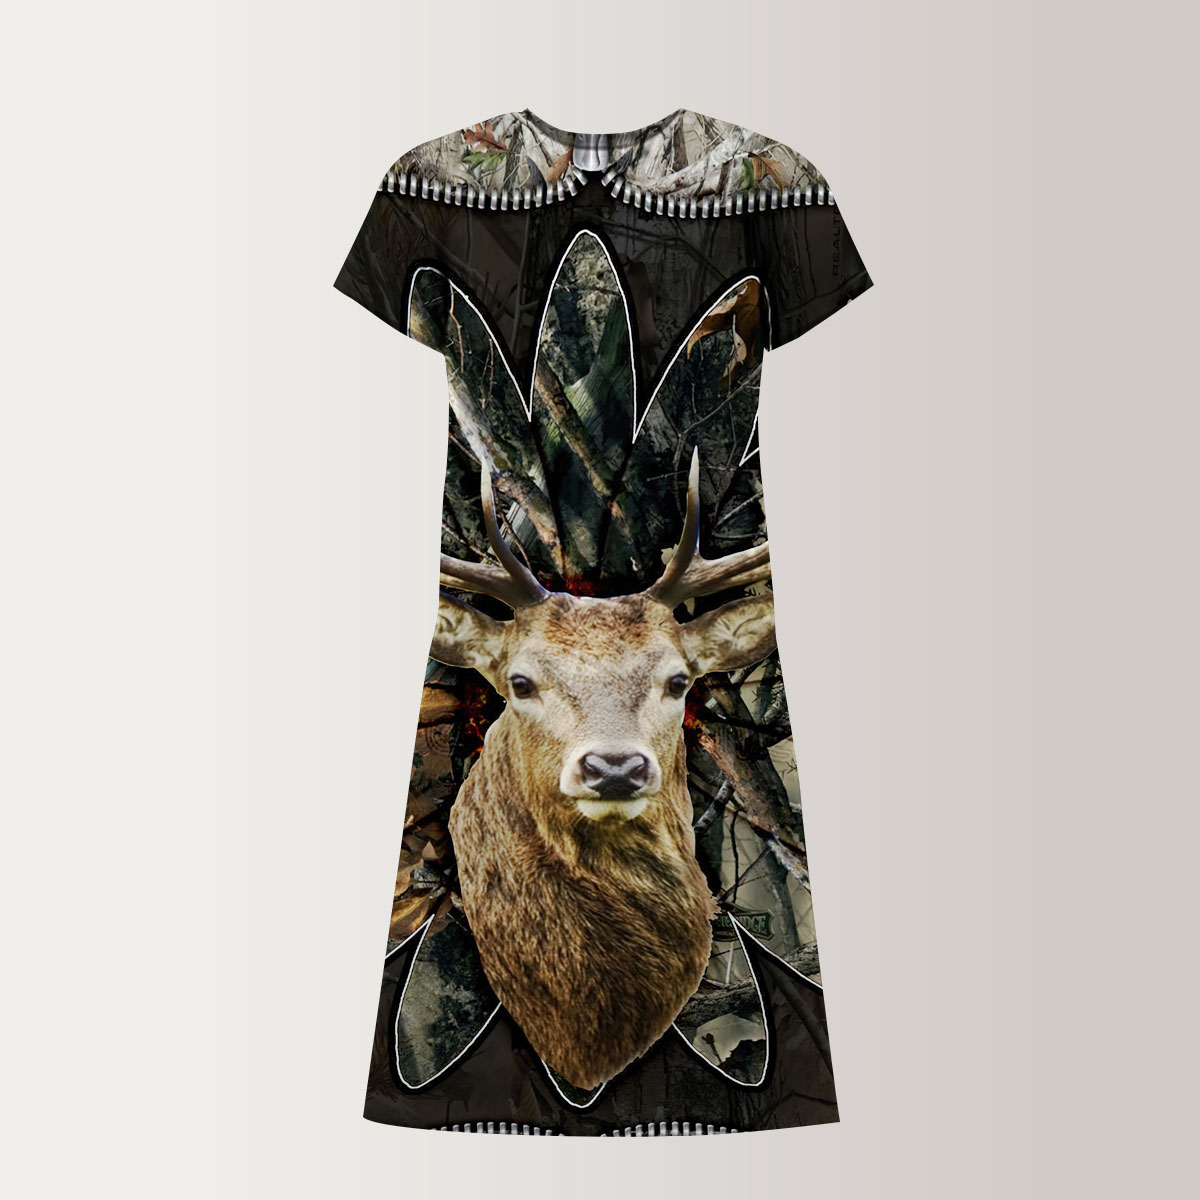 VIntage Deer Hunting T-Shirt Dress